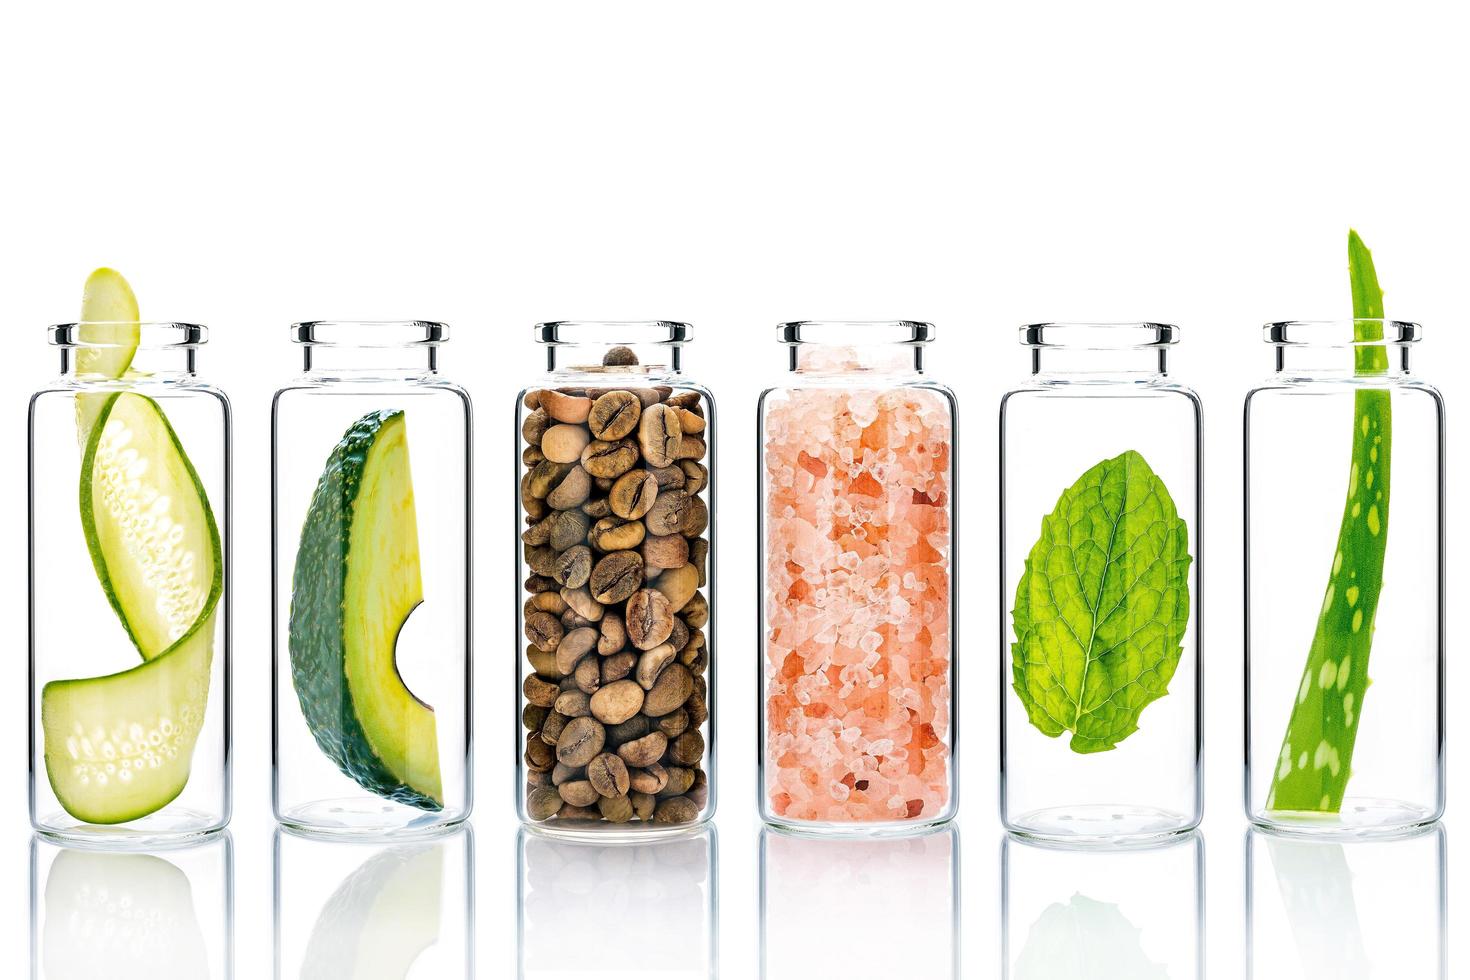 alternatieve huidverzorging met natuurlijke ingrediënten in glazen flessen geïsoleerd op een witte achtergrond foto